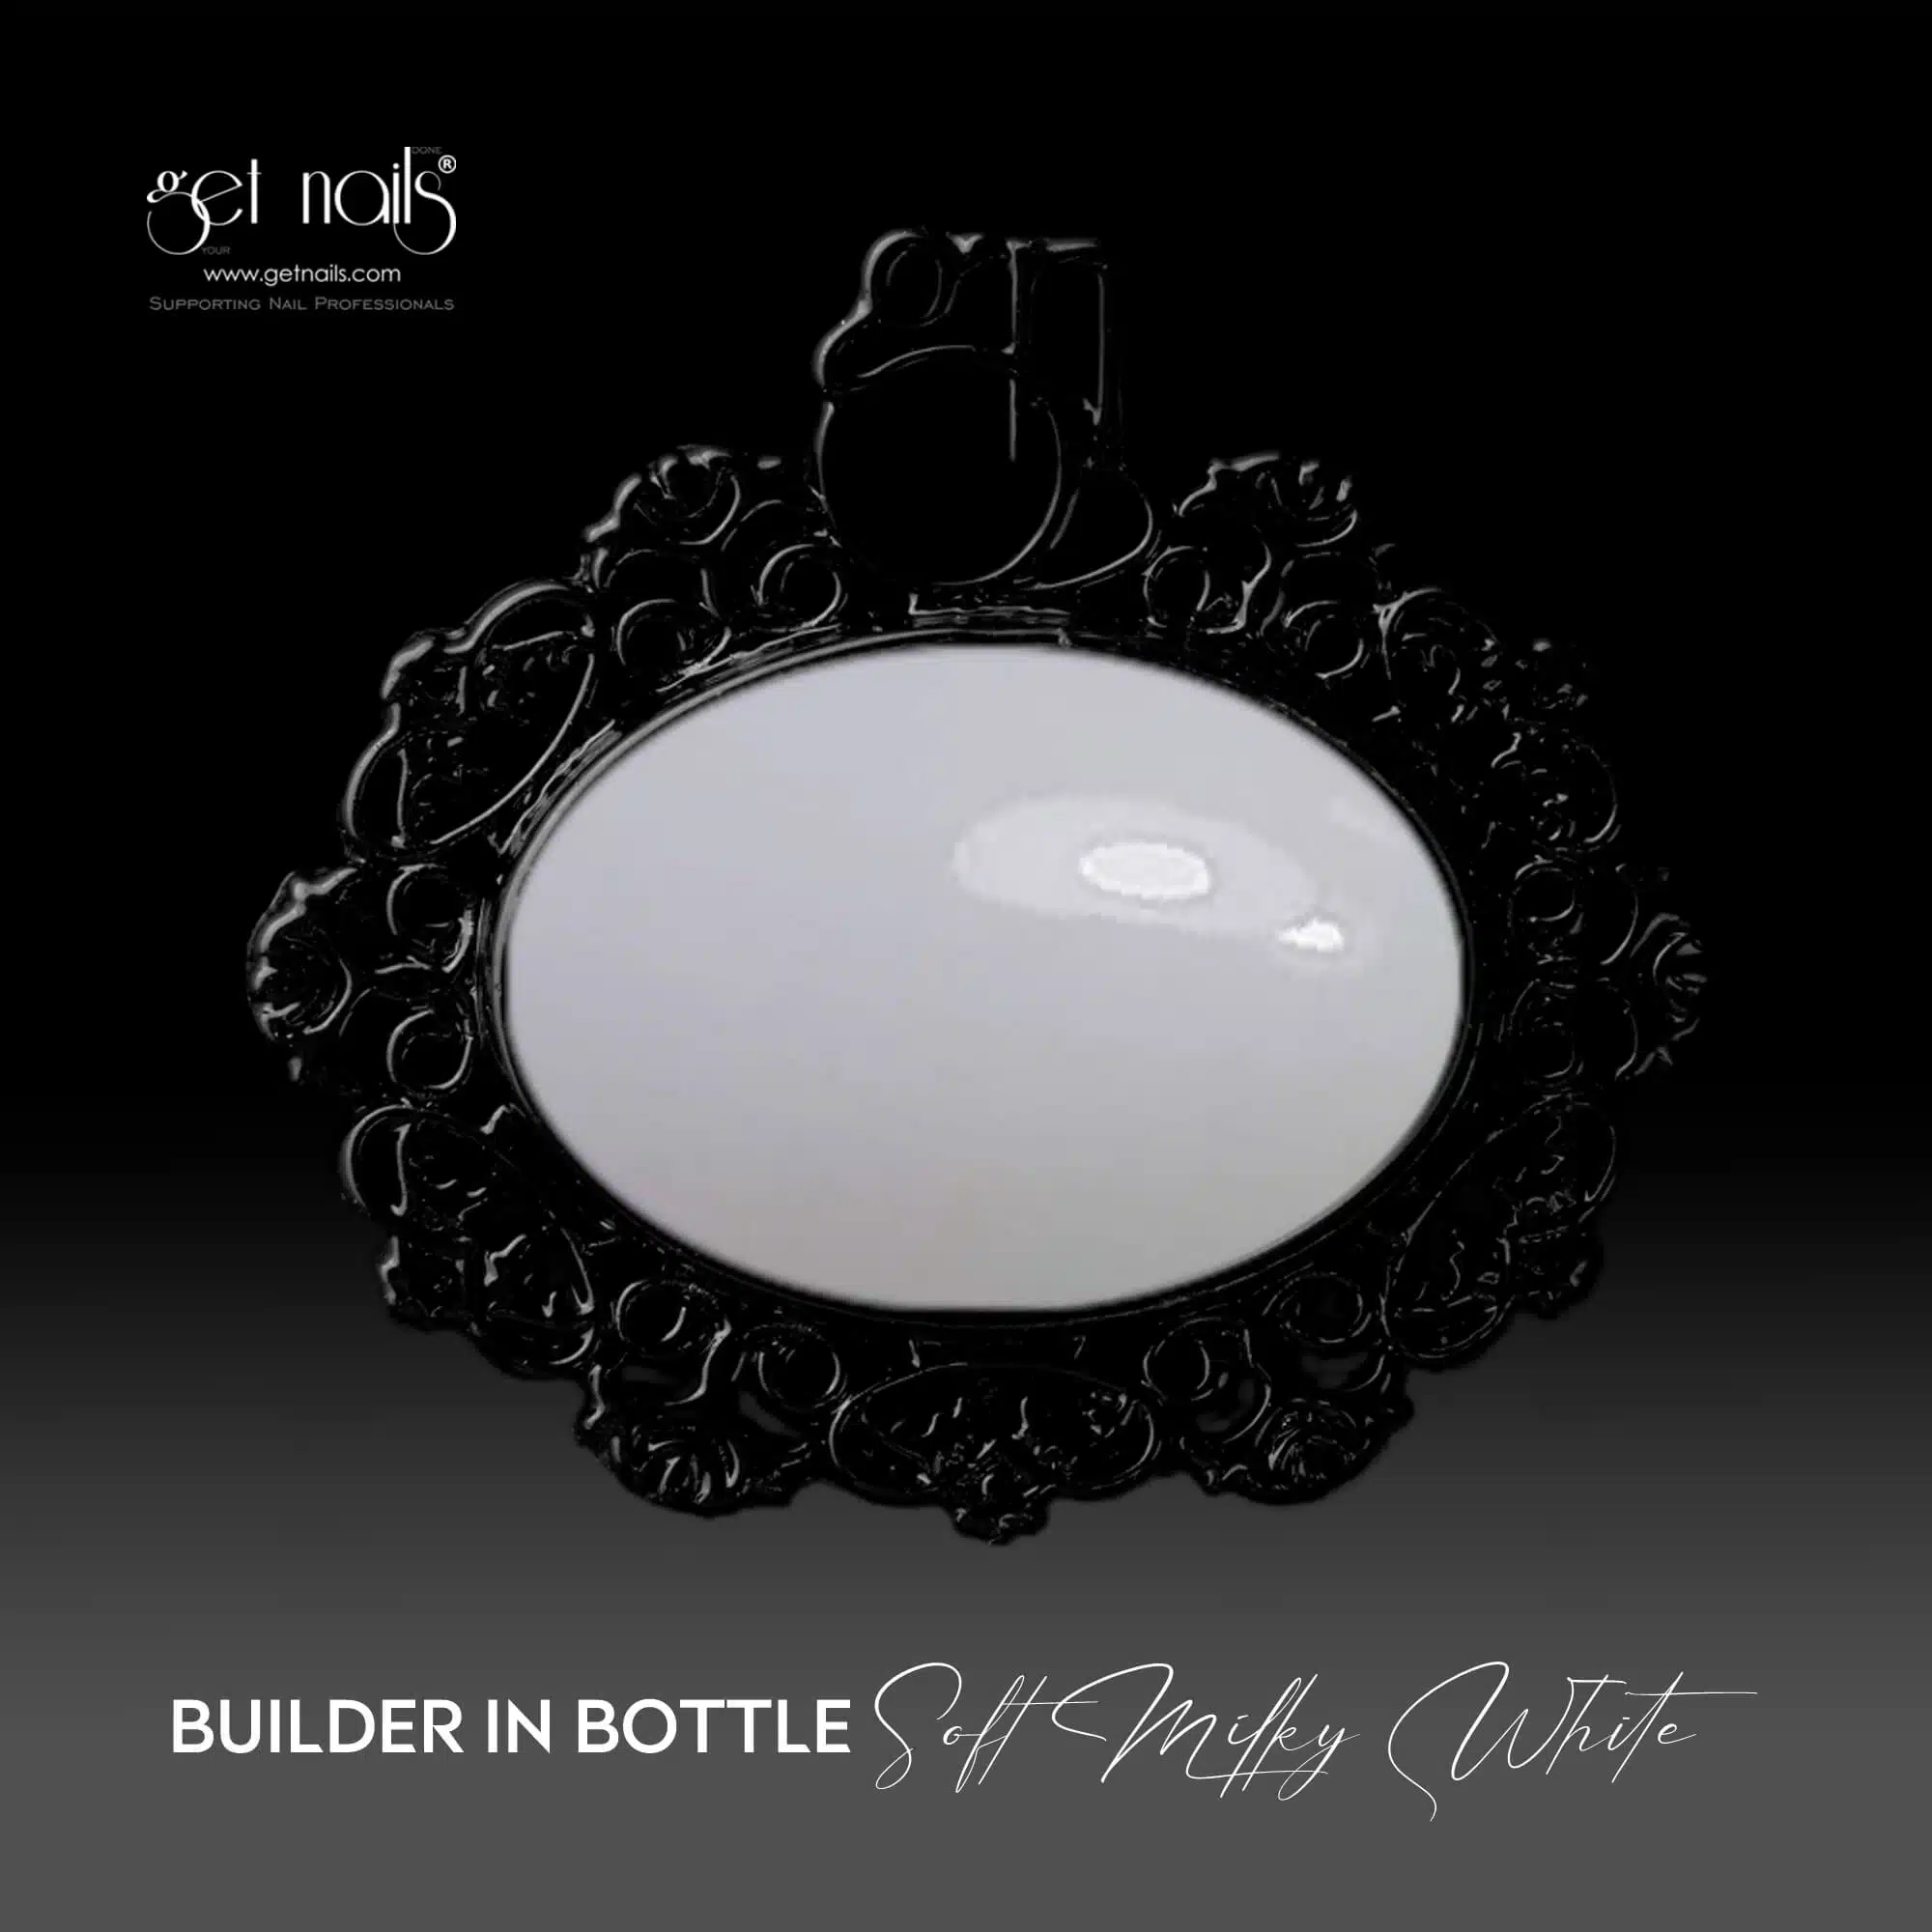 Get Nails Austria - Builder in Bottle Soft Milky White 15g